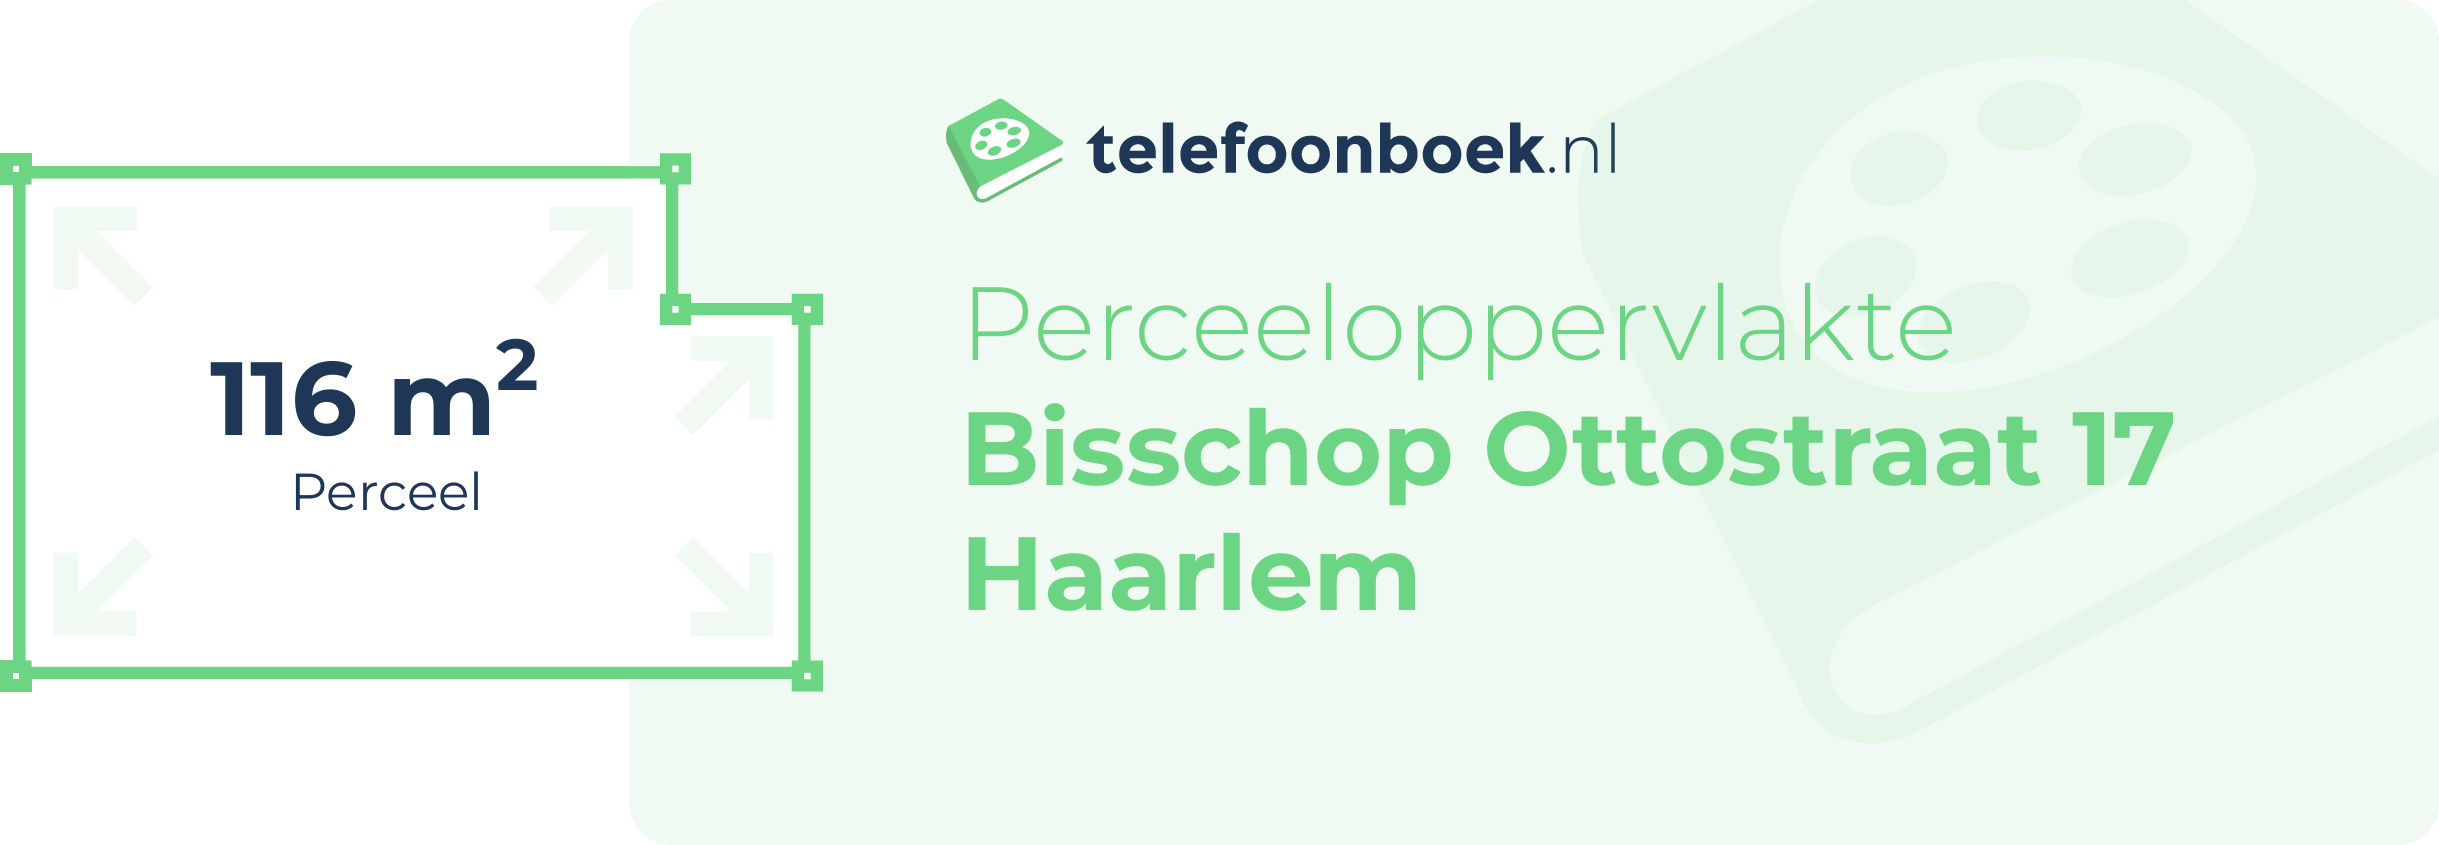 Perceeloppervlakte Bisschop Ottostraat 17 Haarlem